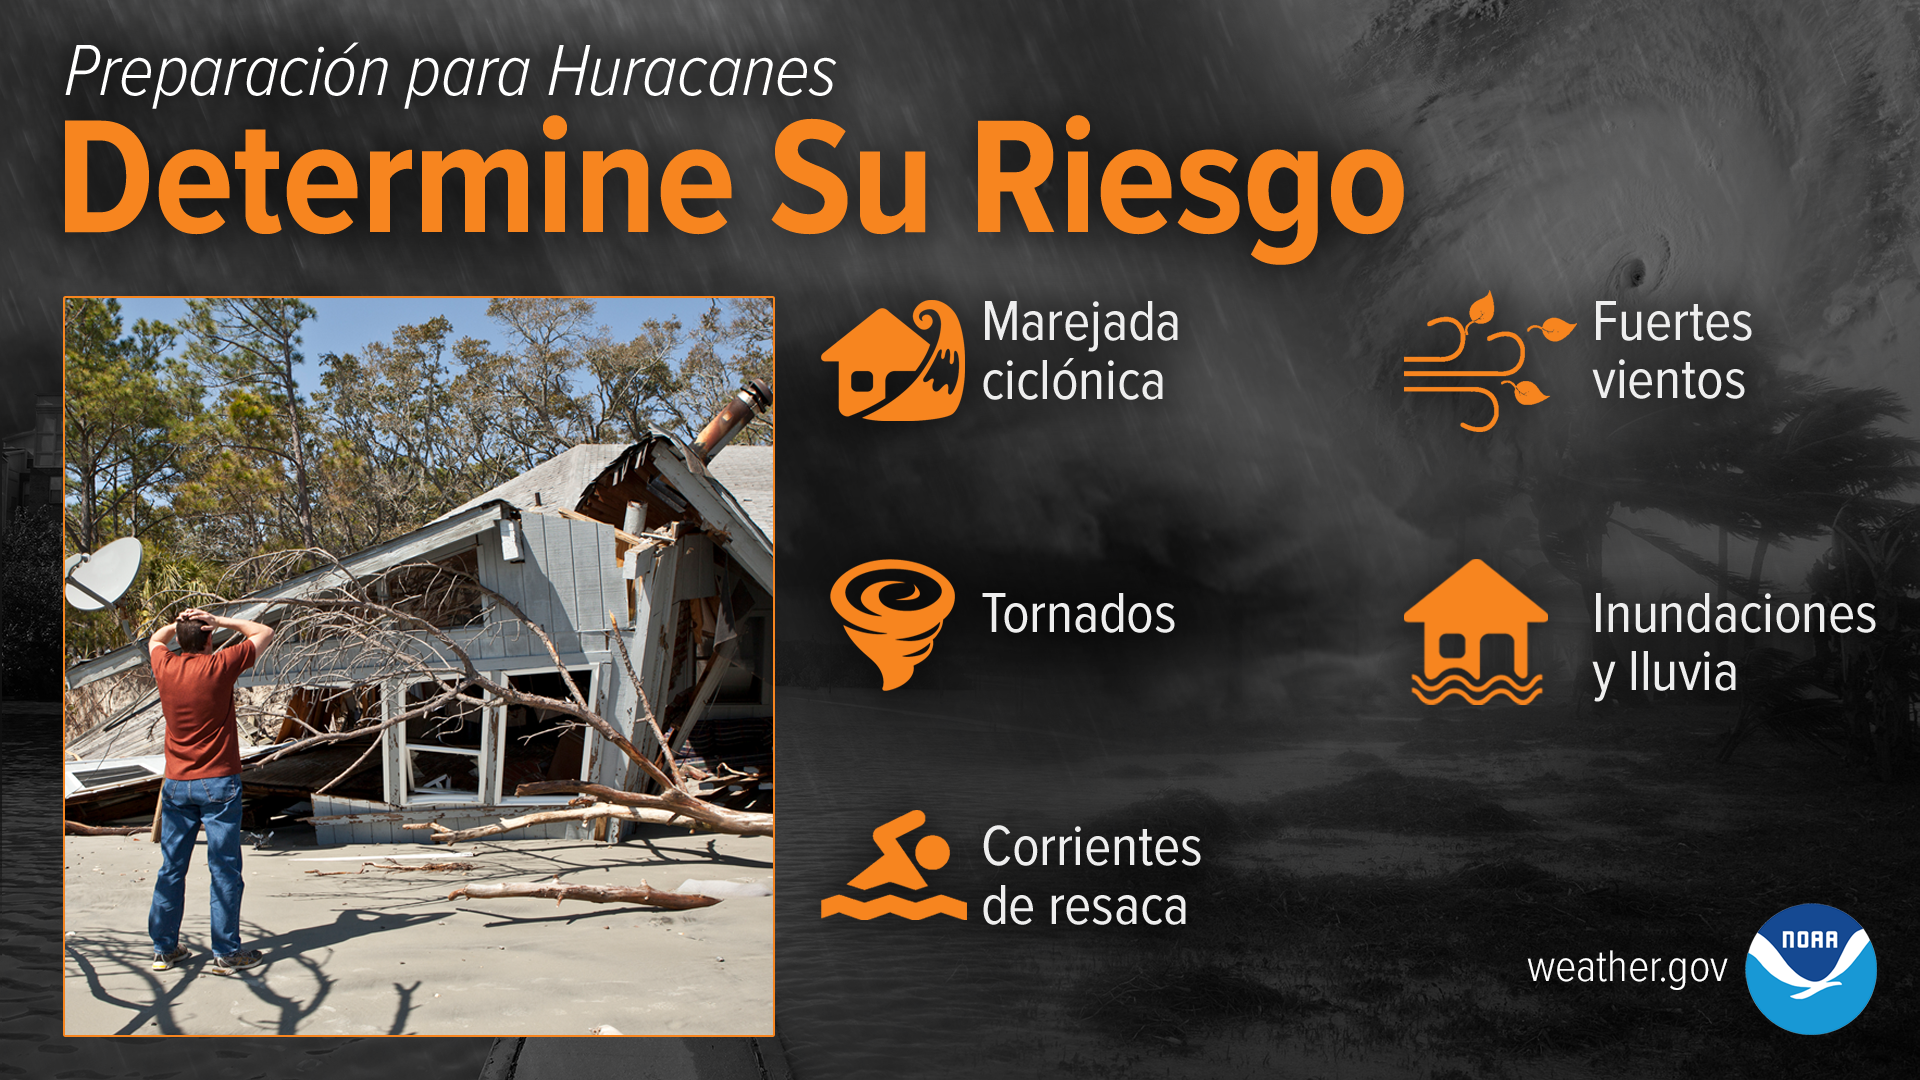 Preparación para Huracanes - Determine Su Riesgo: Marejada ciclónica. Fuertes vientos. Tornados. Inundaciones y lluvia. Corrientes de resaca.